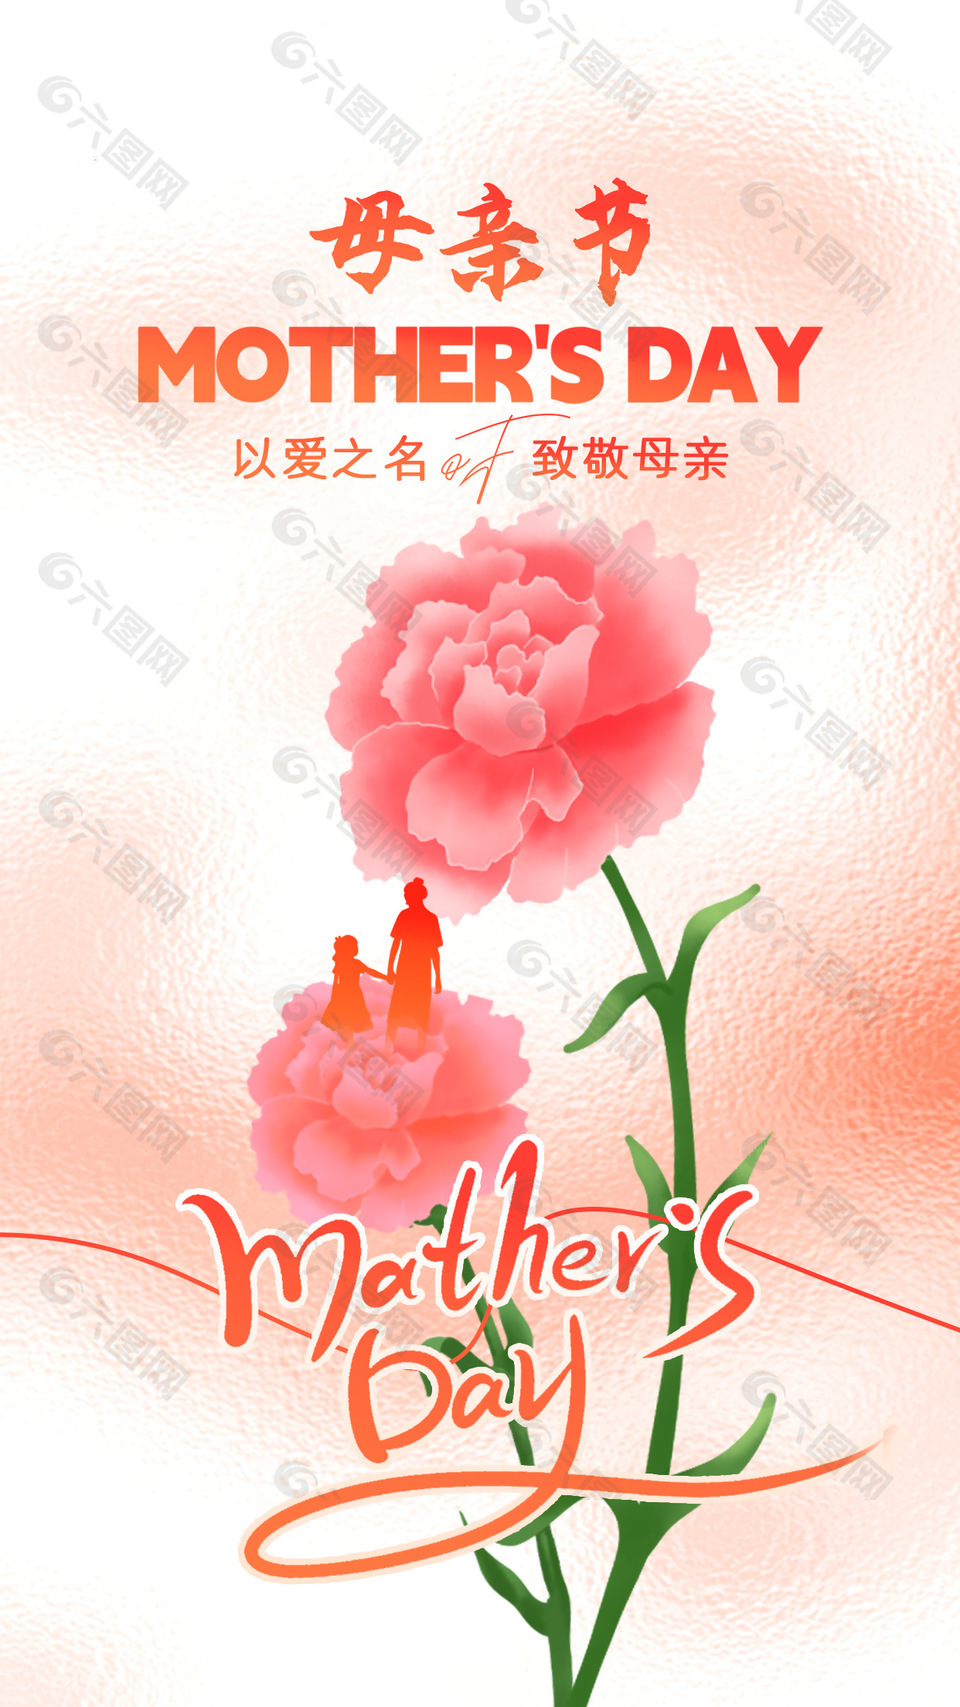 以爱之名致敬母亲主视觉鲜花主题海报